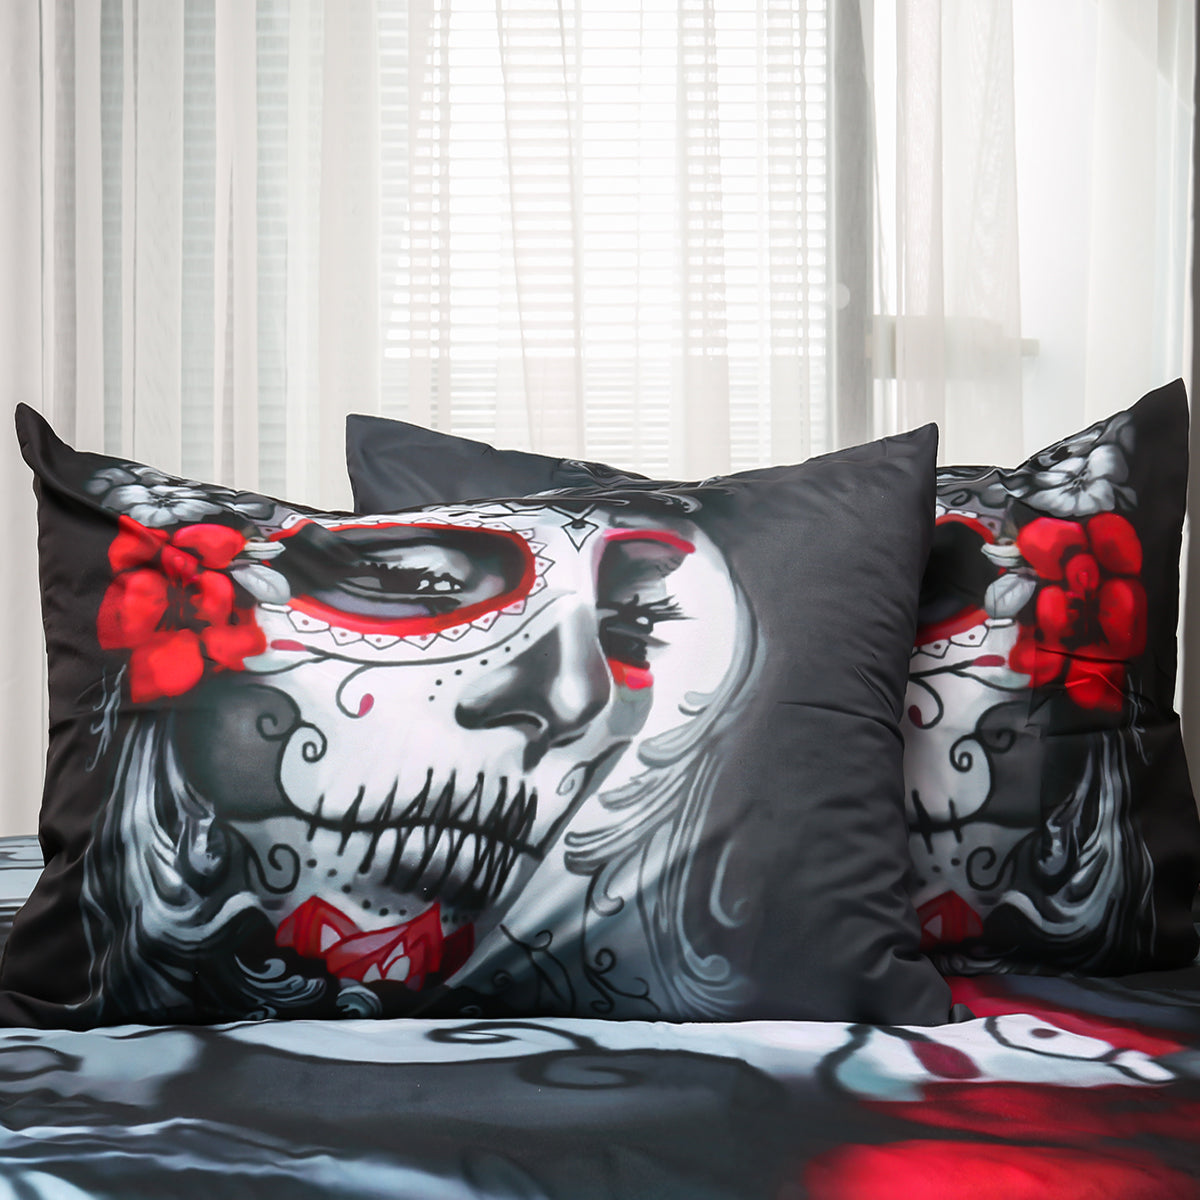 WONGS BEDDING Skull Duvet cover set Bedding Bedroom set